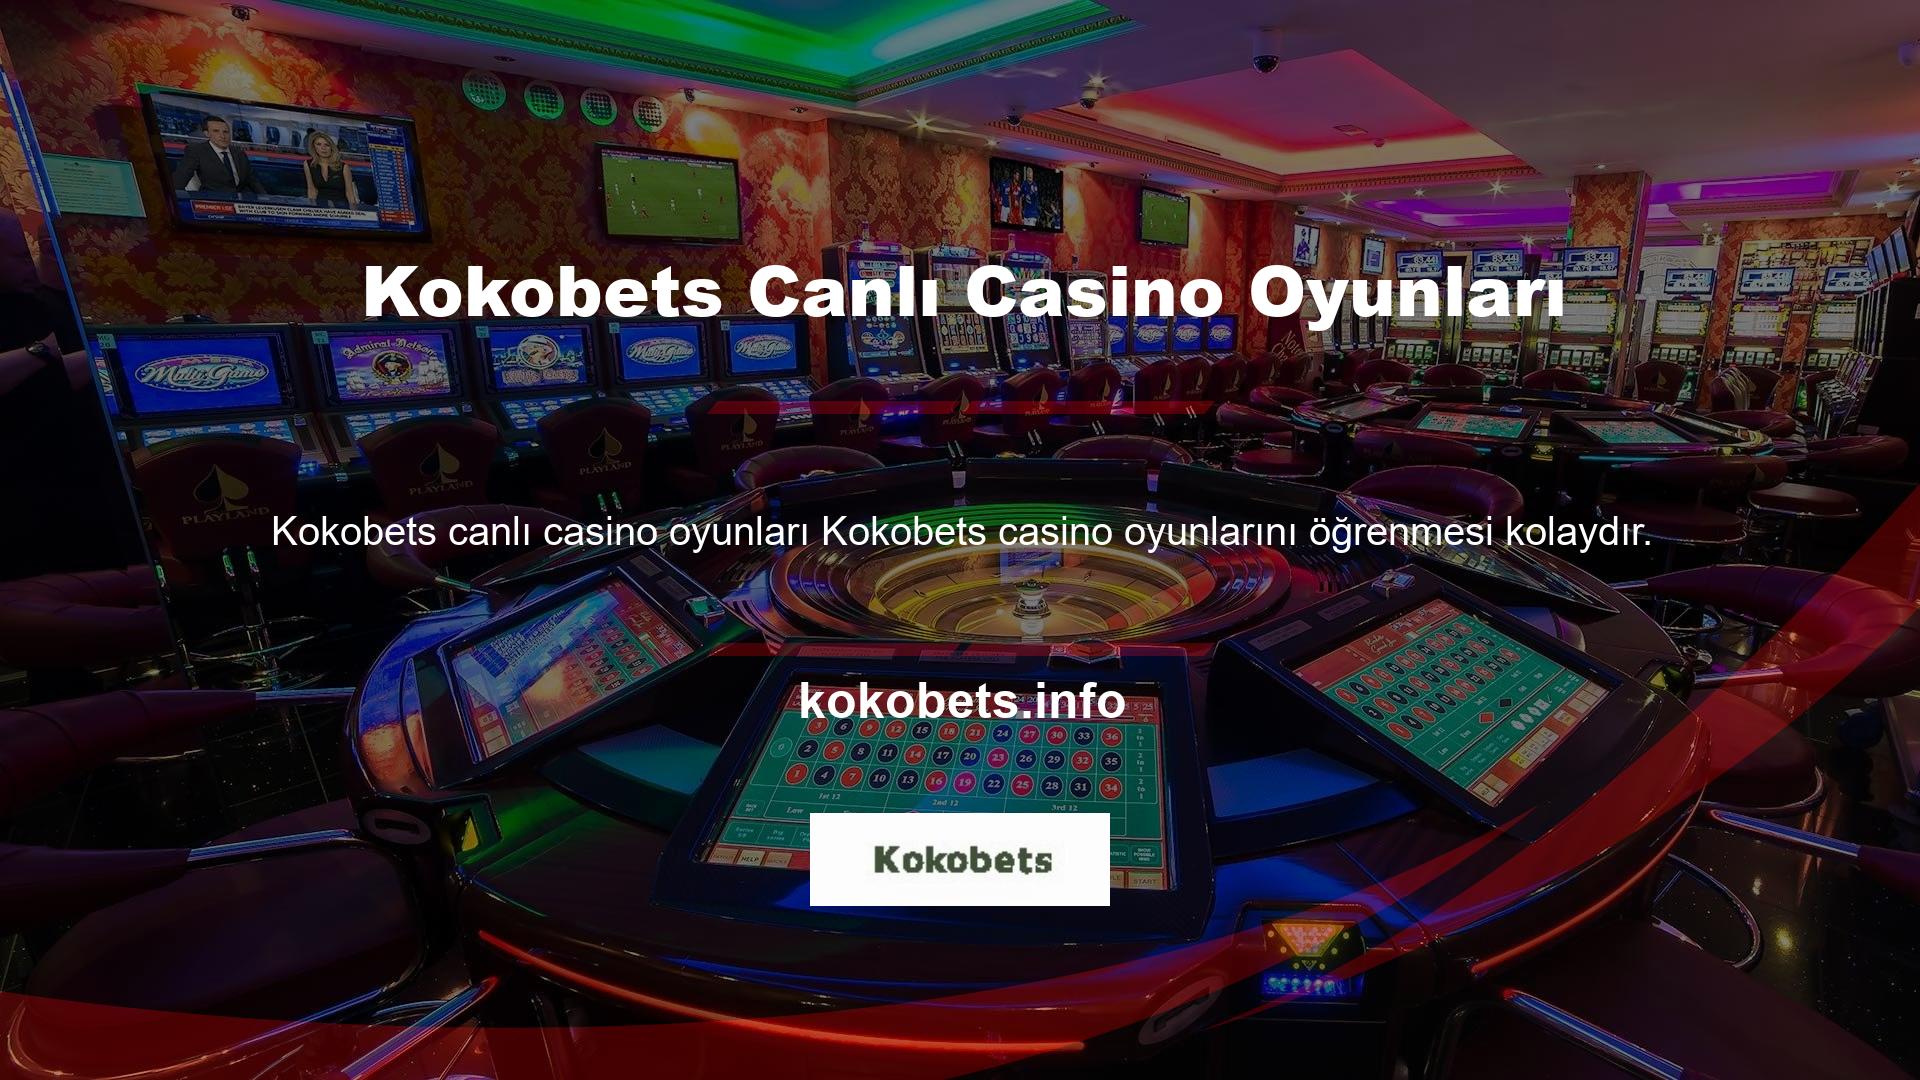 Kokobets Online Casino Oyunları Katılmak istediğiniz masanın URL'sine tıklayarak masaların listesini görüntüleyebilirsiniz